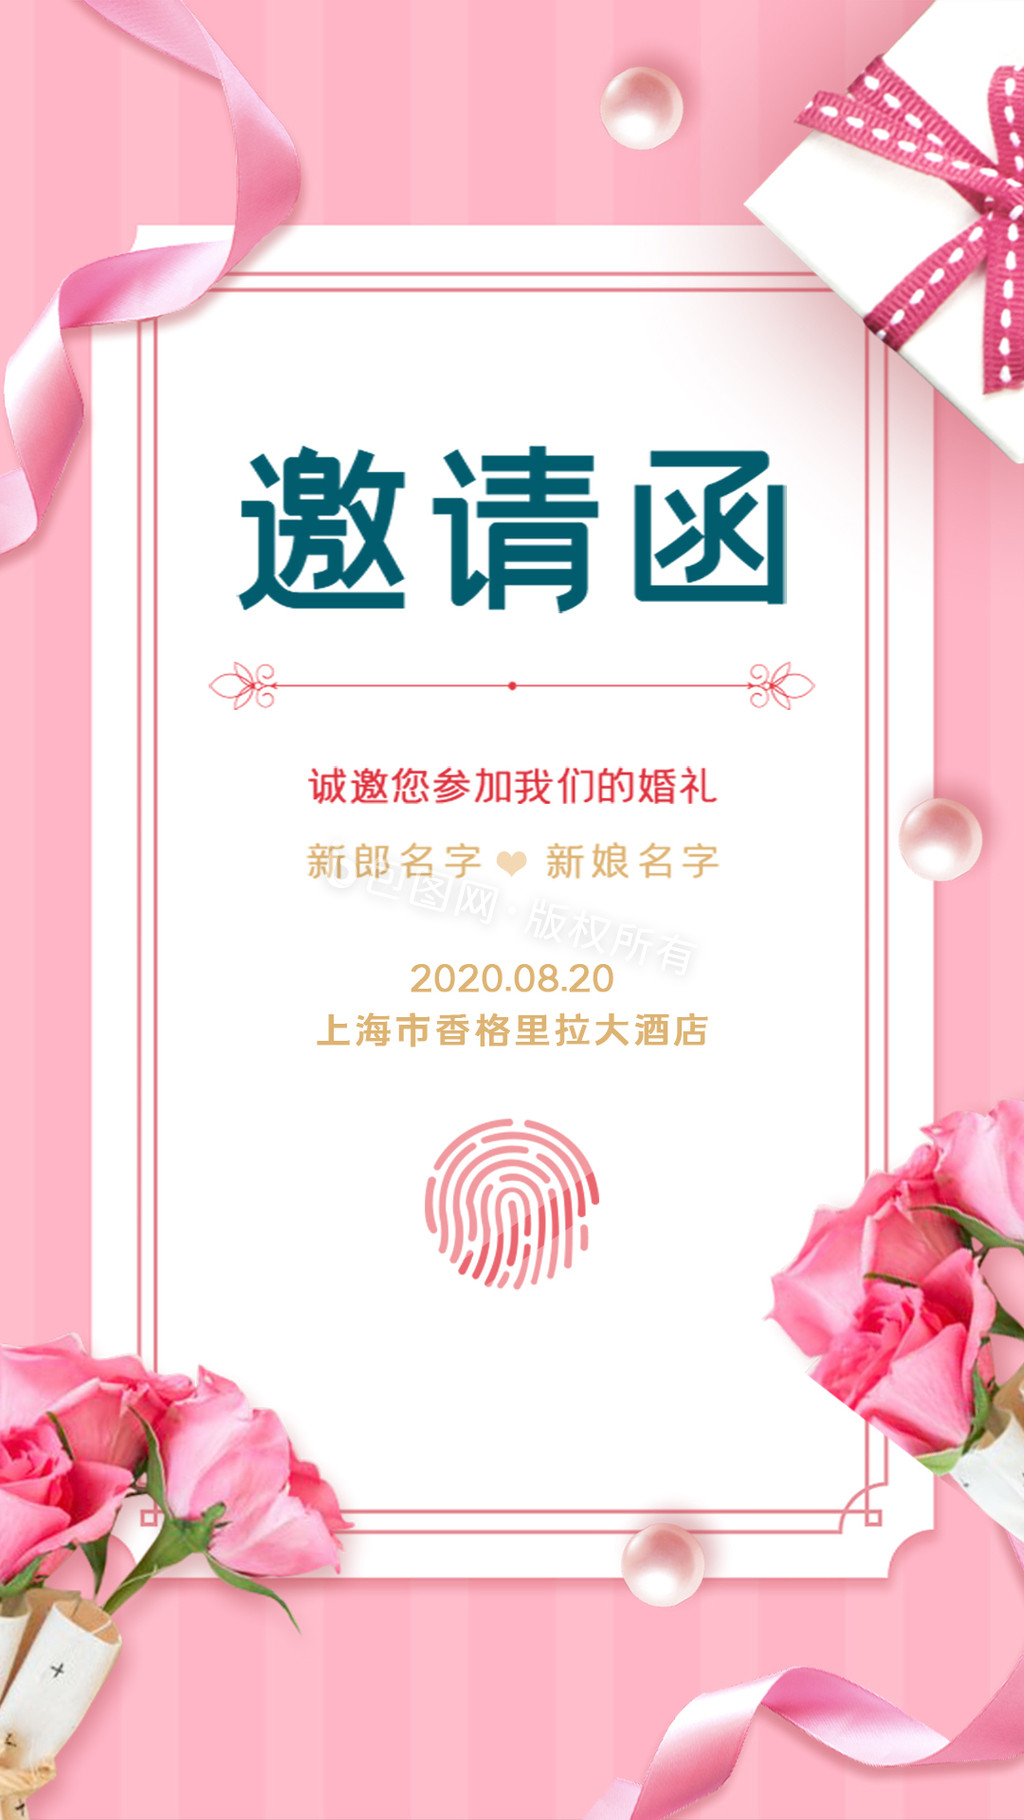 粉色浪漫婚礼邀请函动态海报动图GIF图片